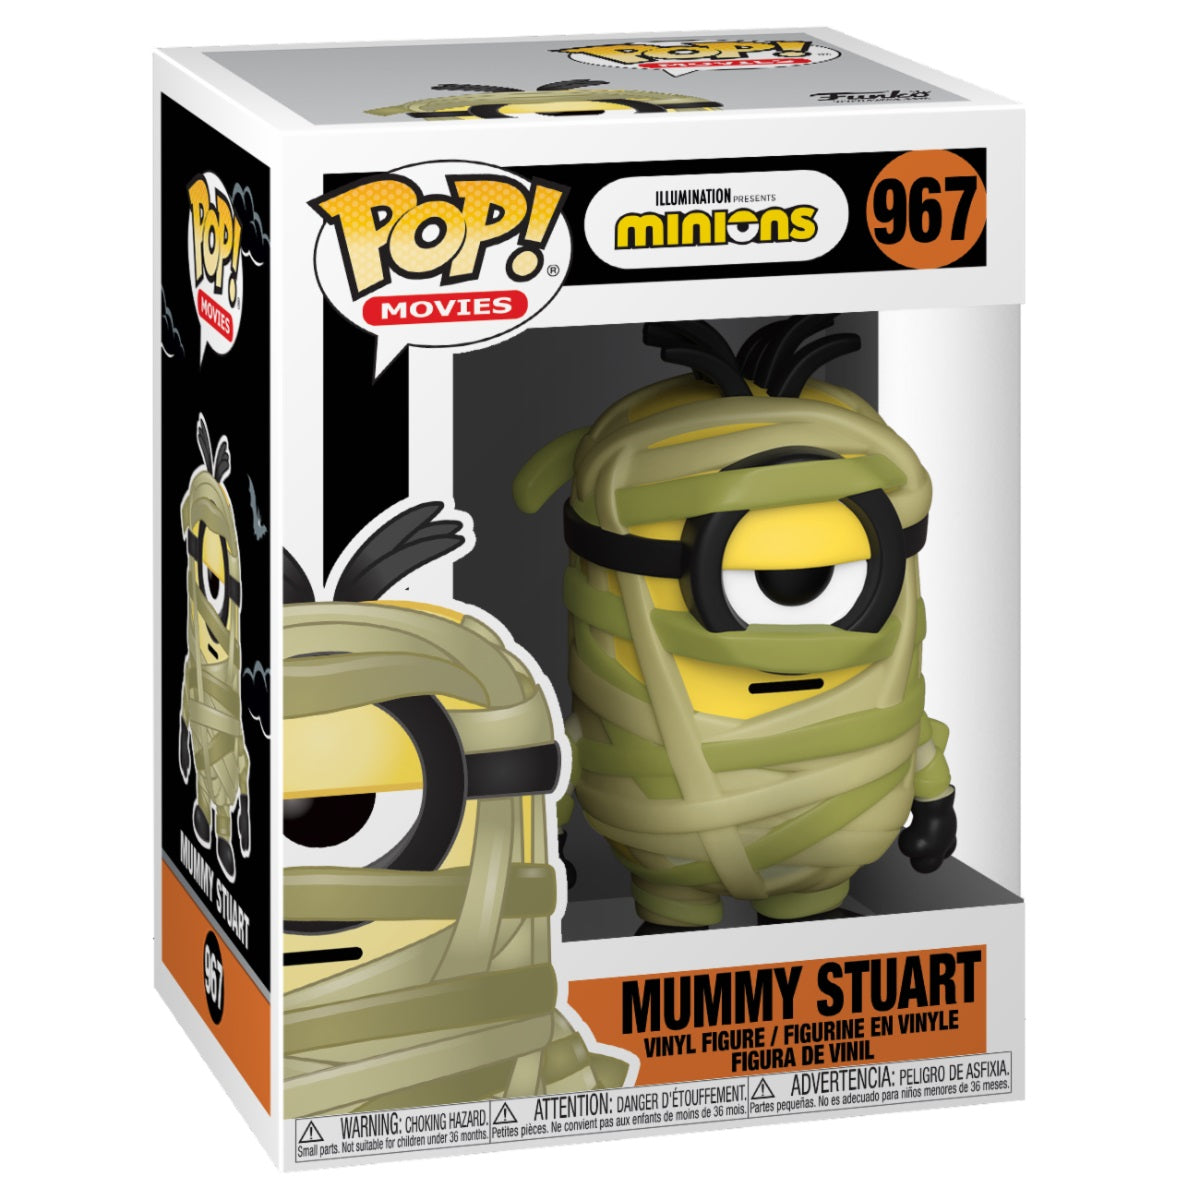 Funko Pop! Movies - Minions: Mummy Stuart #967